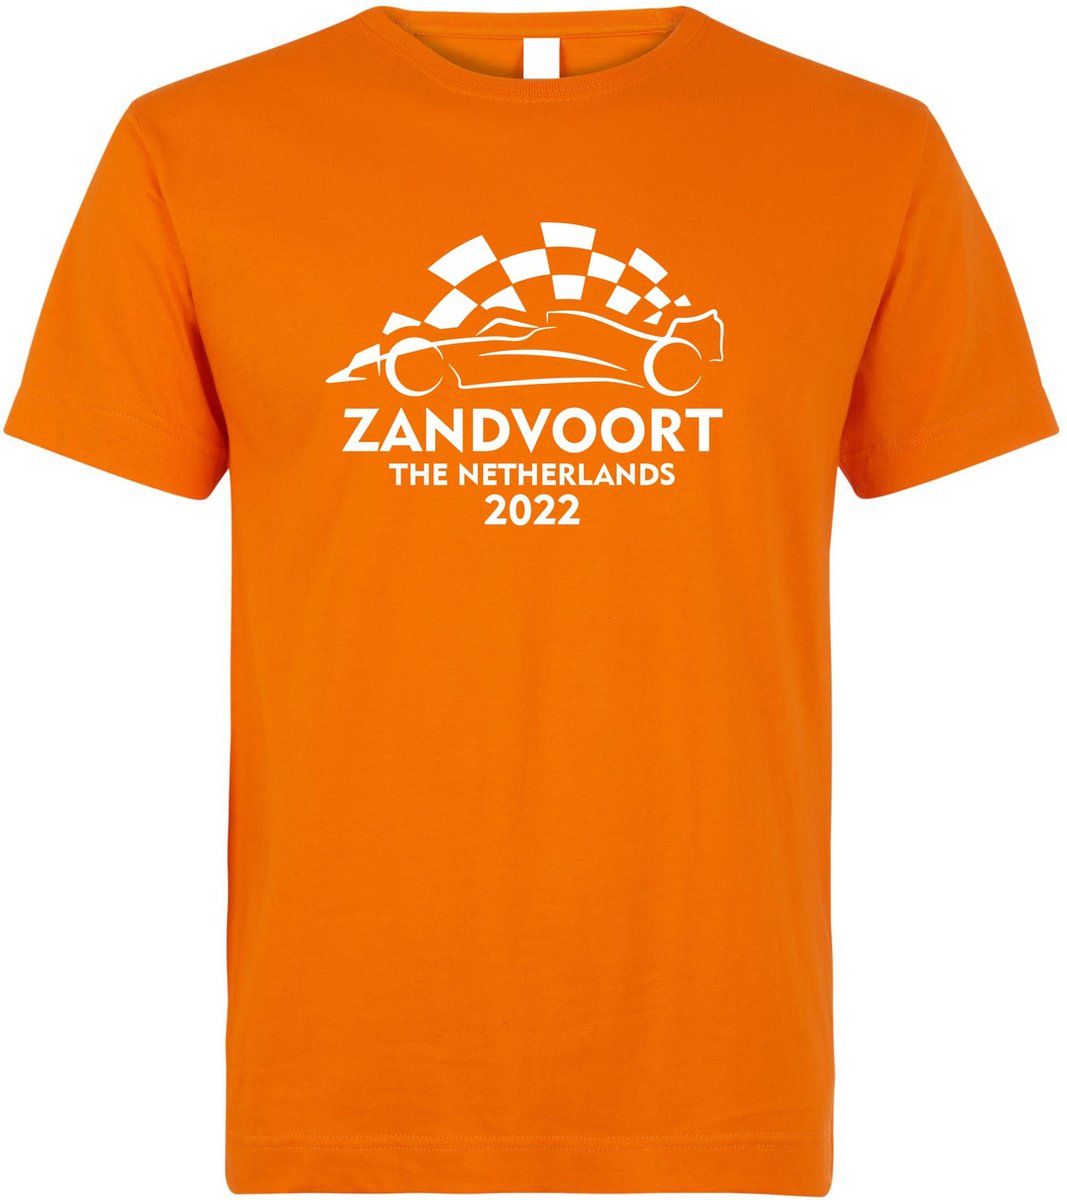 T-shirt Zandvoort The Netherlands 2022 met raceauto | Max Verstappen / Red Bull Racing / Formule 1 fan | Grand Prix Circuit Zandvoort | kleding shirt | Oranje | maat XS